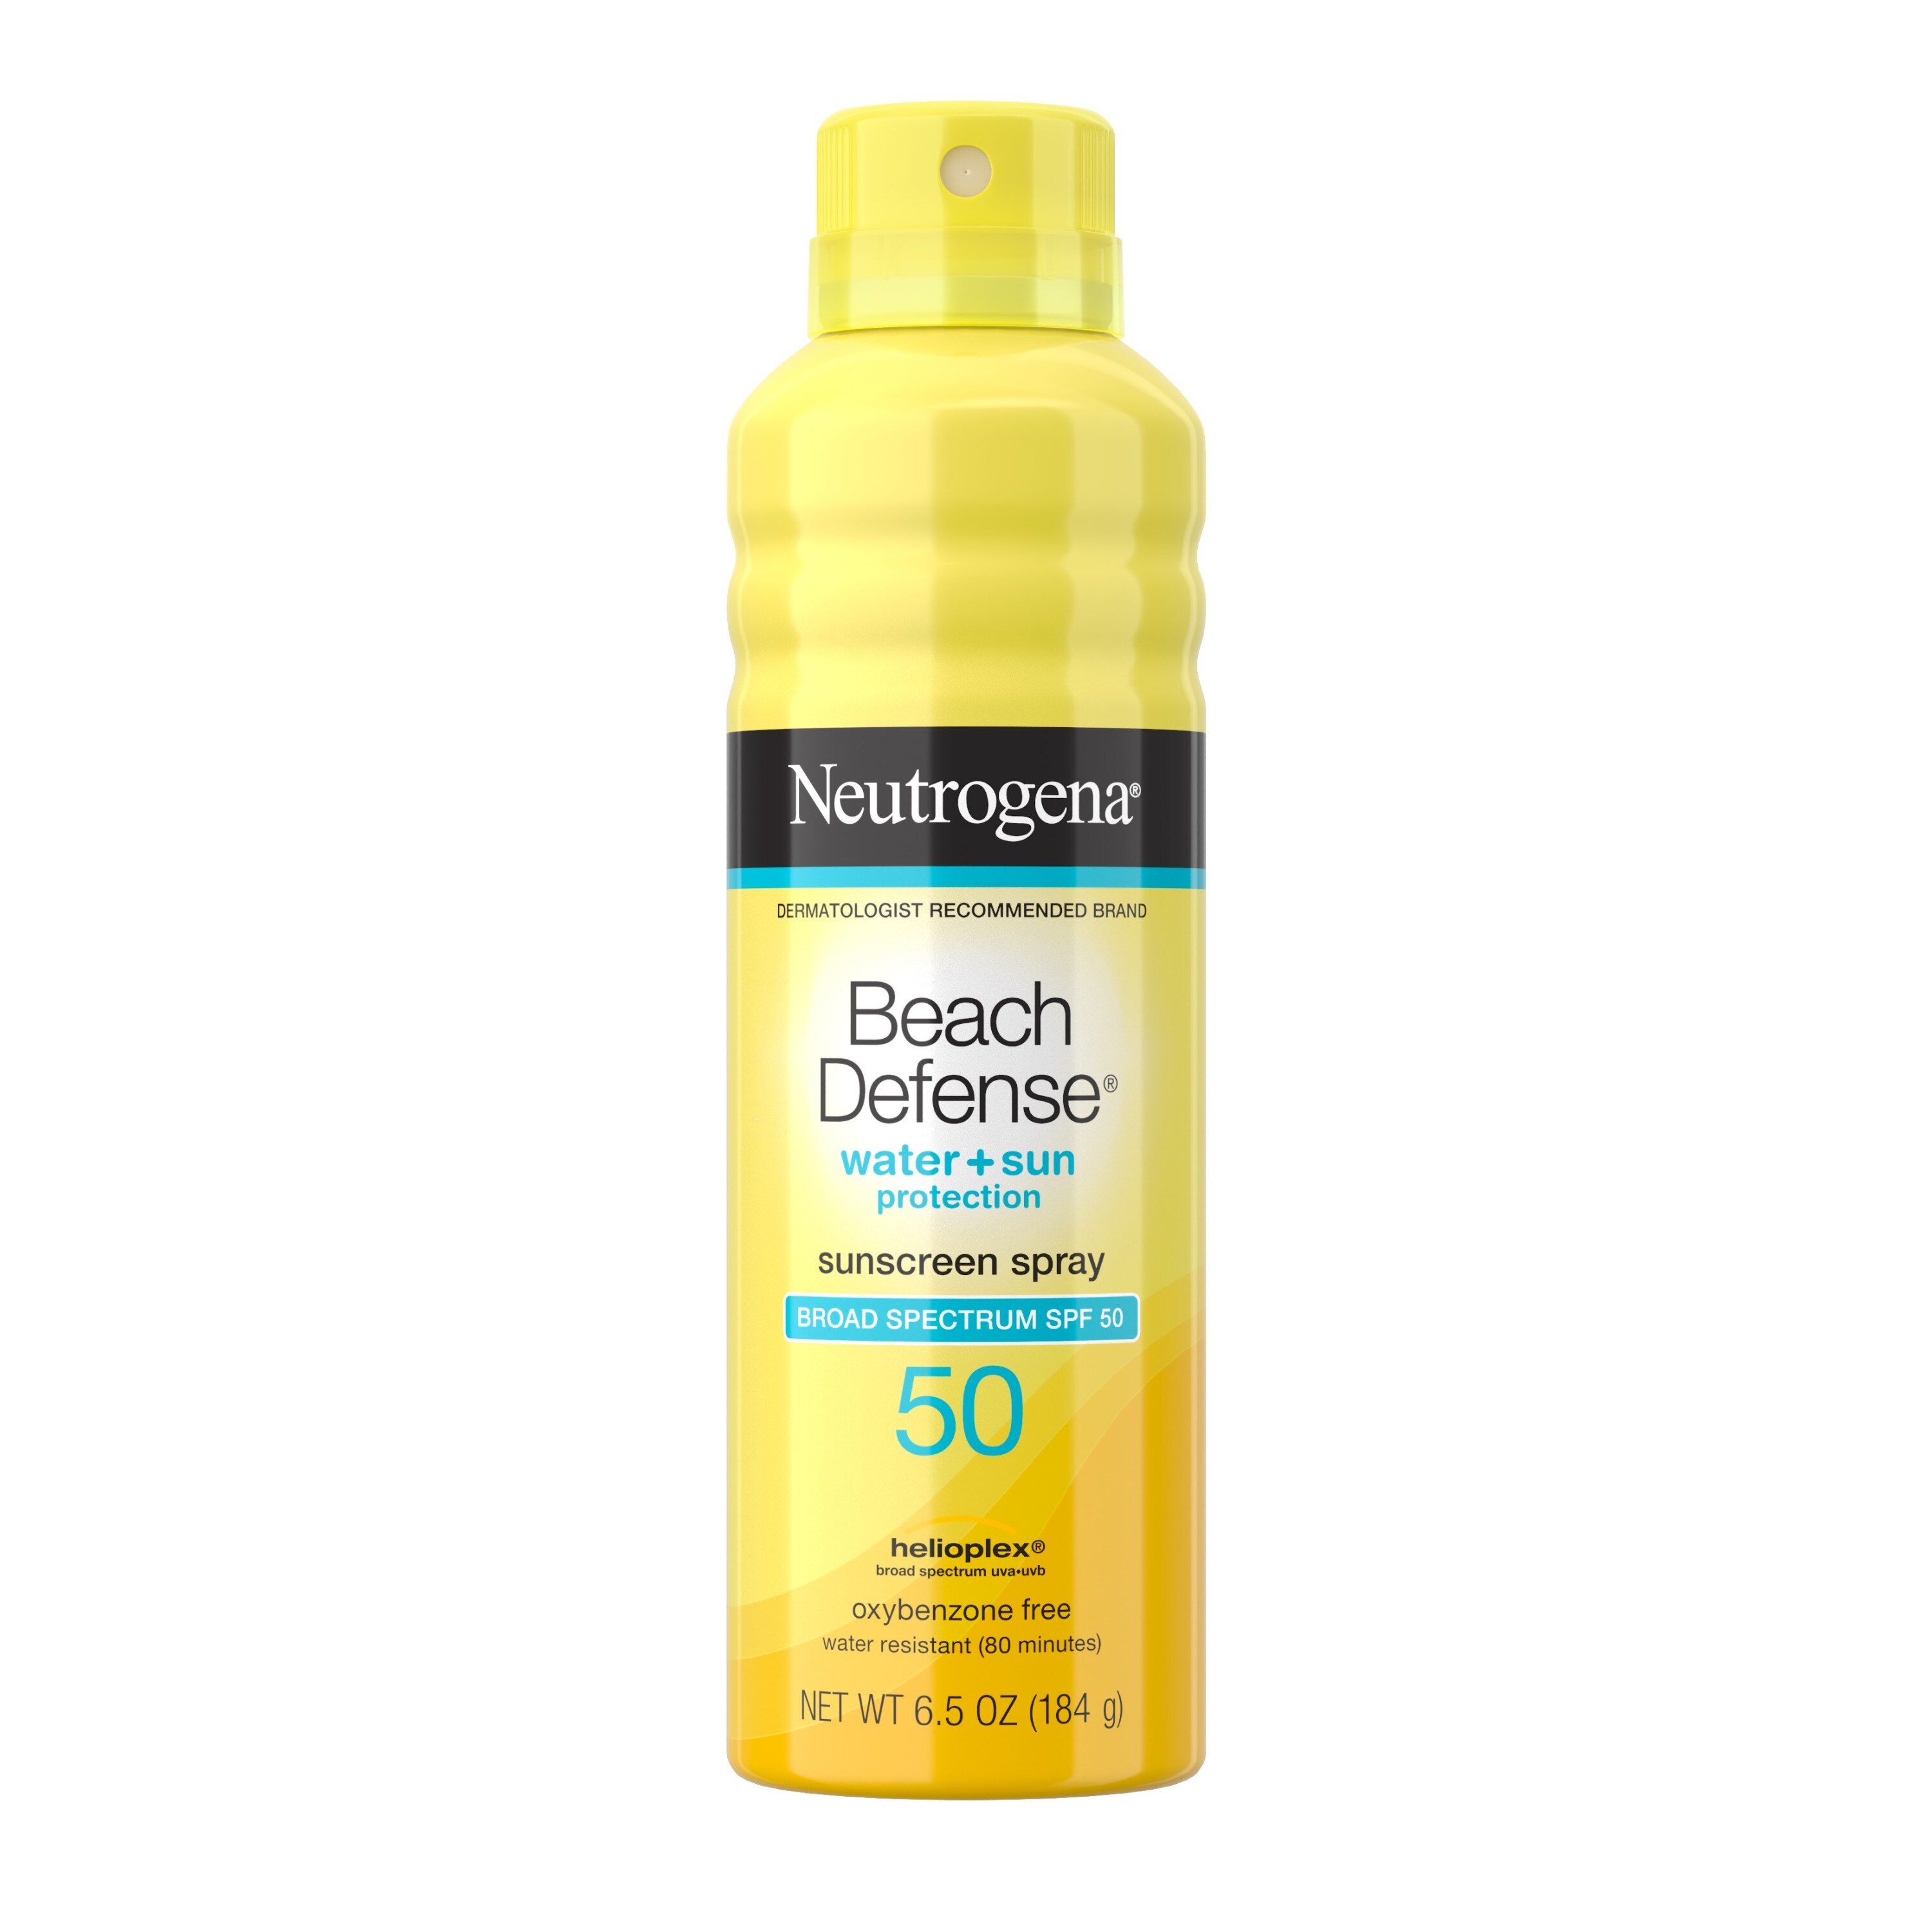 Neutrogena Beach Defense Oil-Free Body Sunscreen Spray, SPF 50, 6.5 OZ